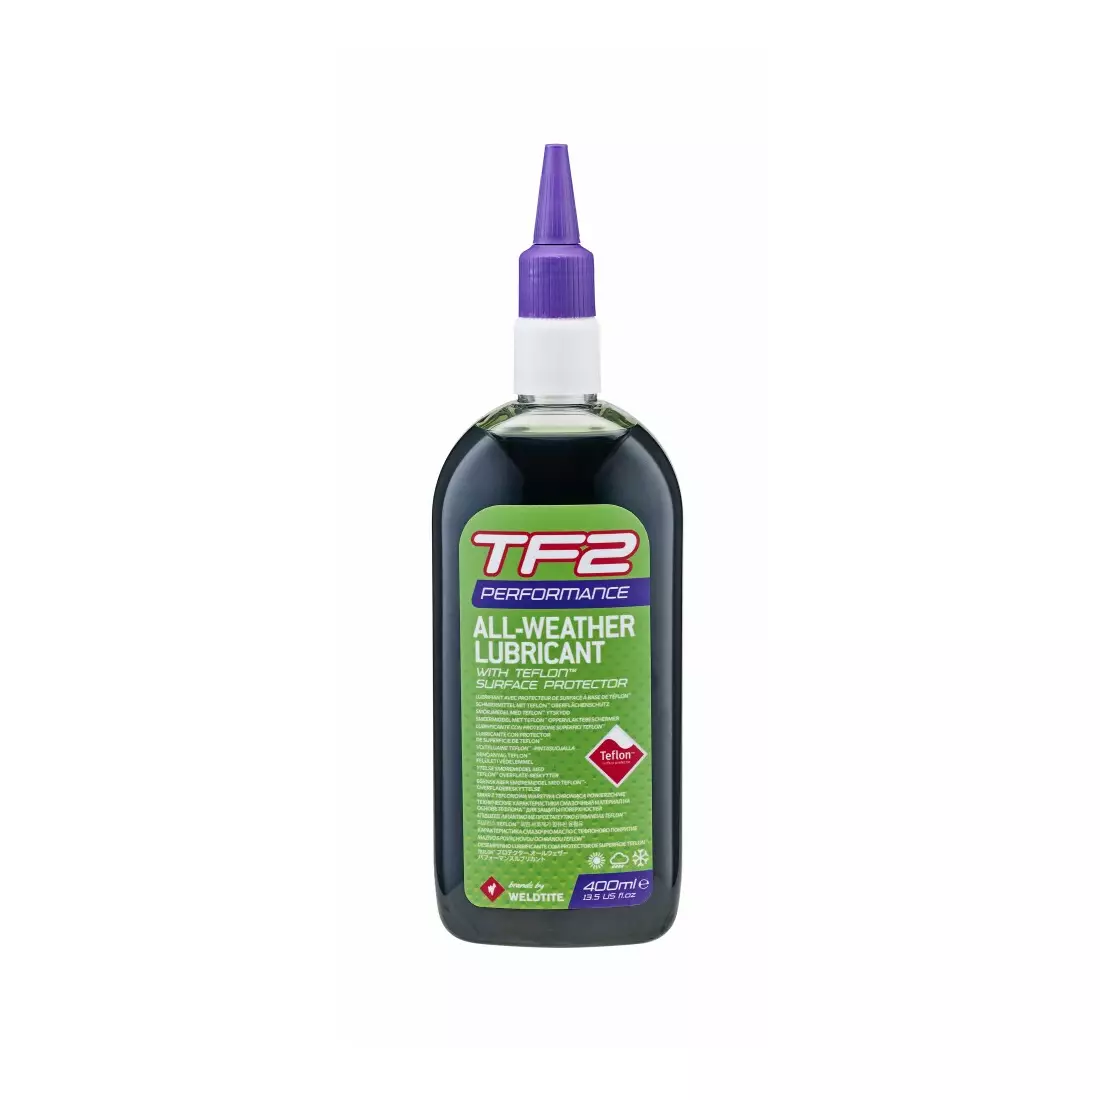 WELDTITE olej do łańcucha tf2 performance teflon all weather (warunki suche i mokre) 400ml WLD-03074